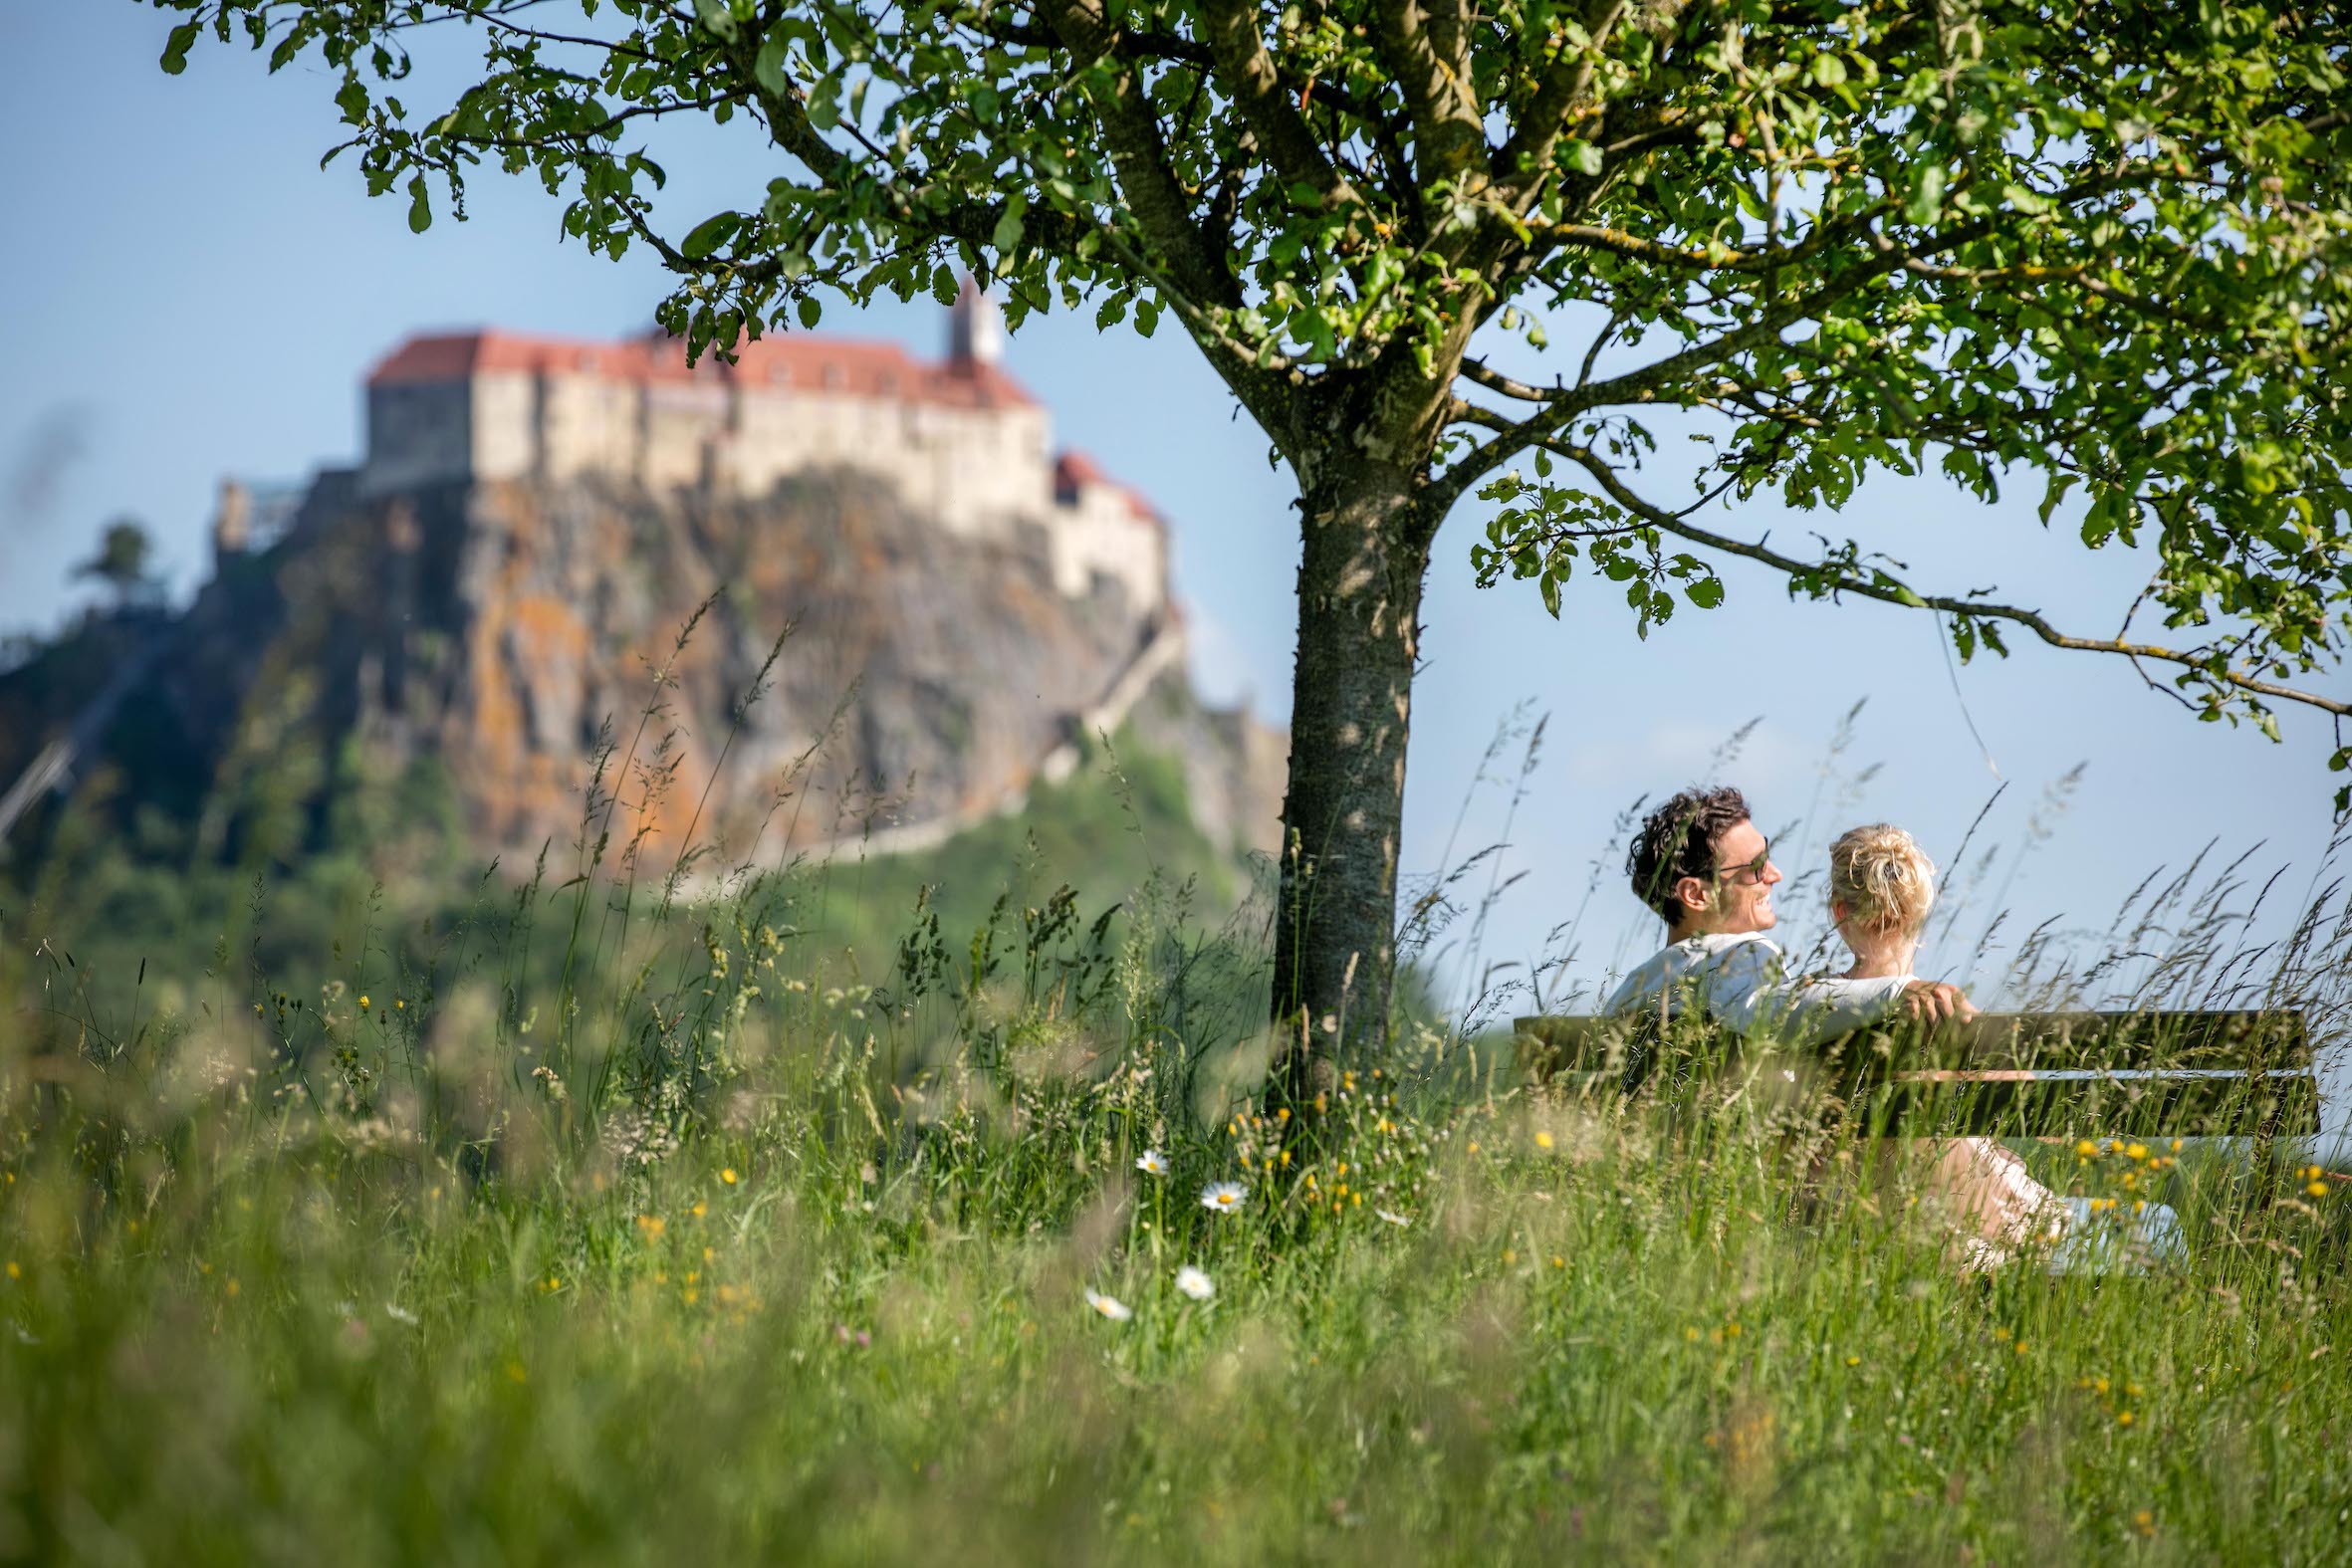 zwei Personen sitzen auf einer Bank unter einen Baum. Im Hintergrund ist eine Burg zu sehen.